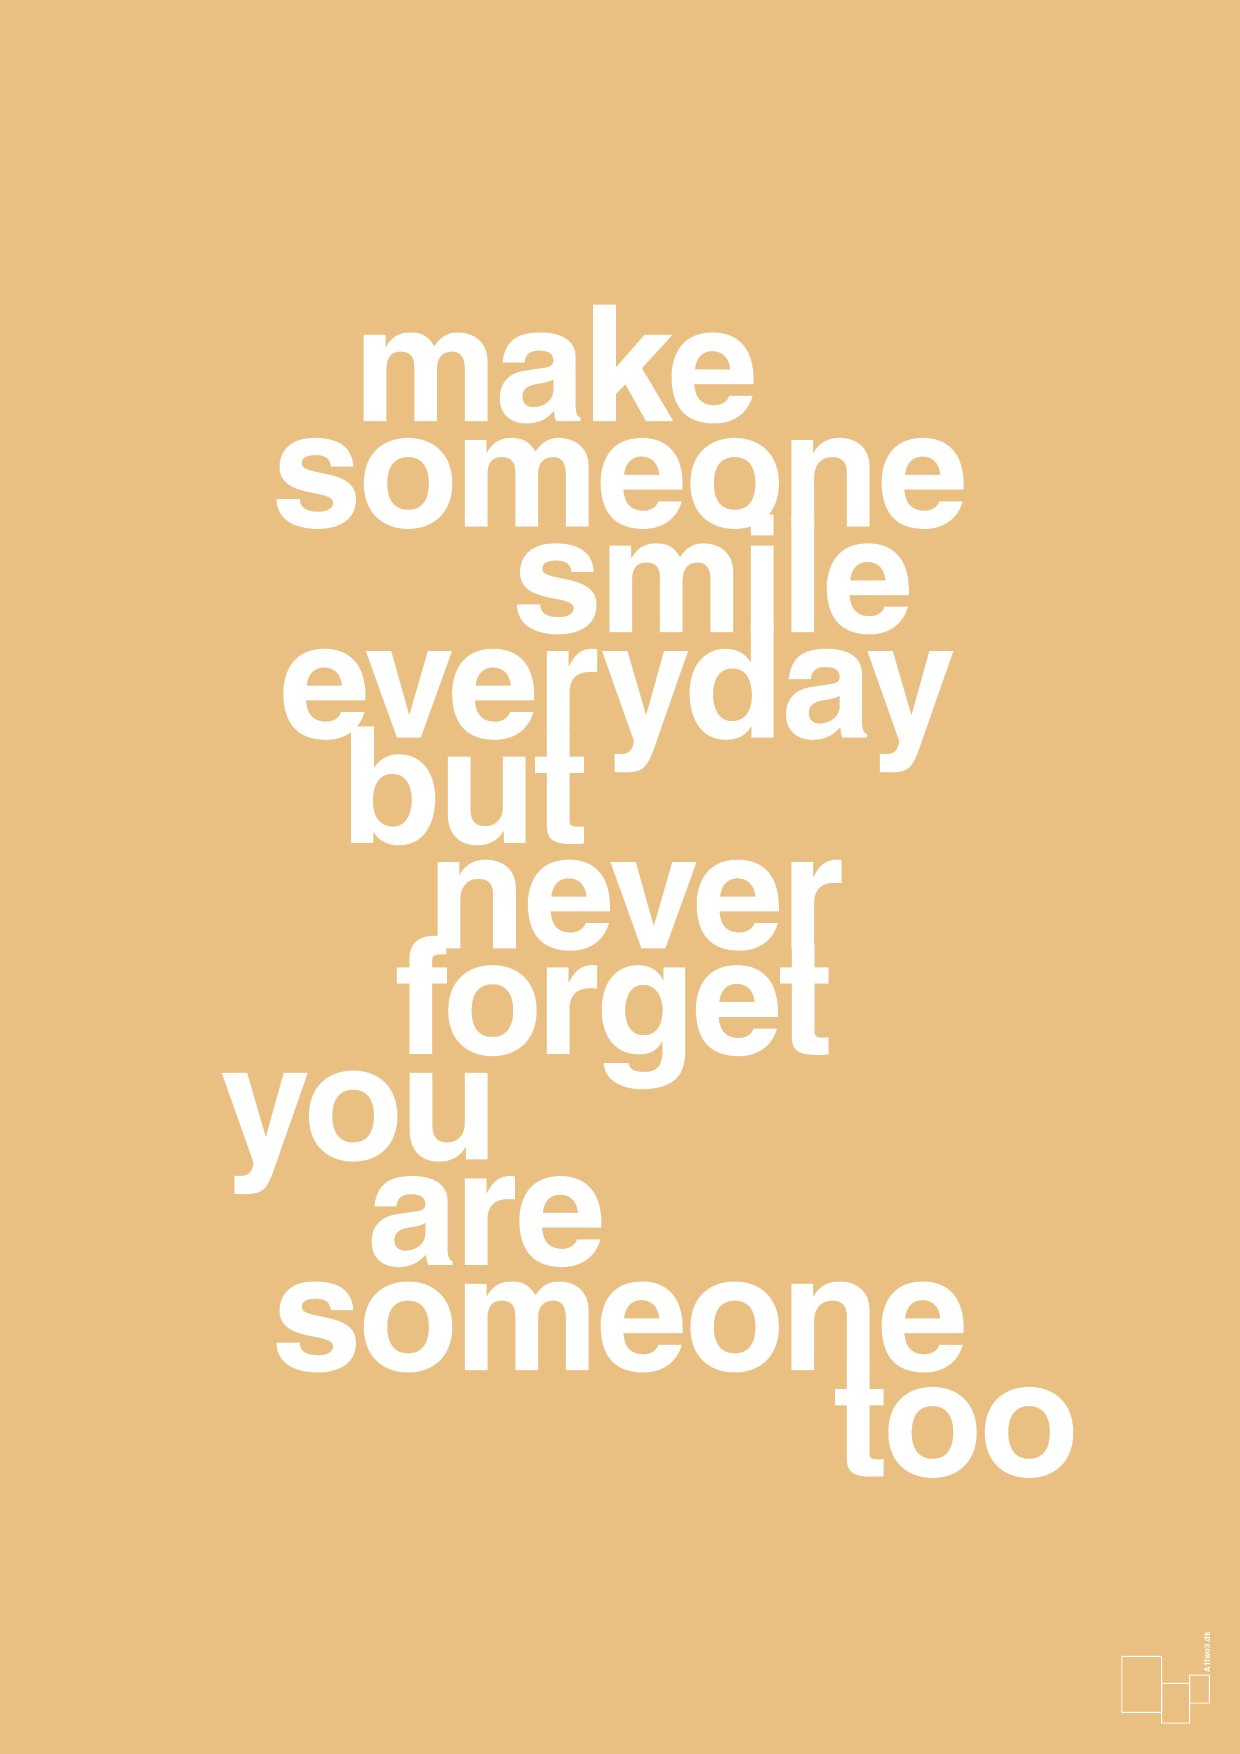 make someone smile everyday - Plakat med Ordsprog i Charismatic